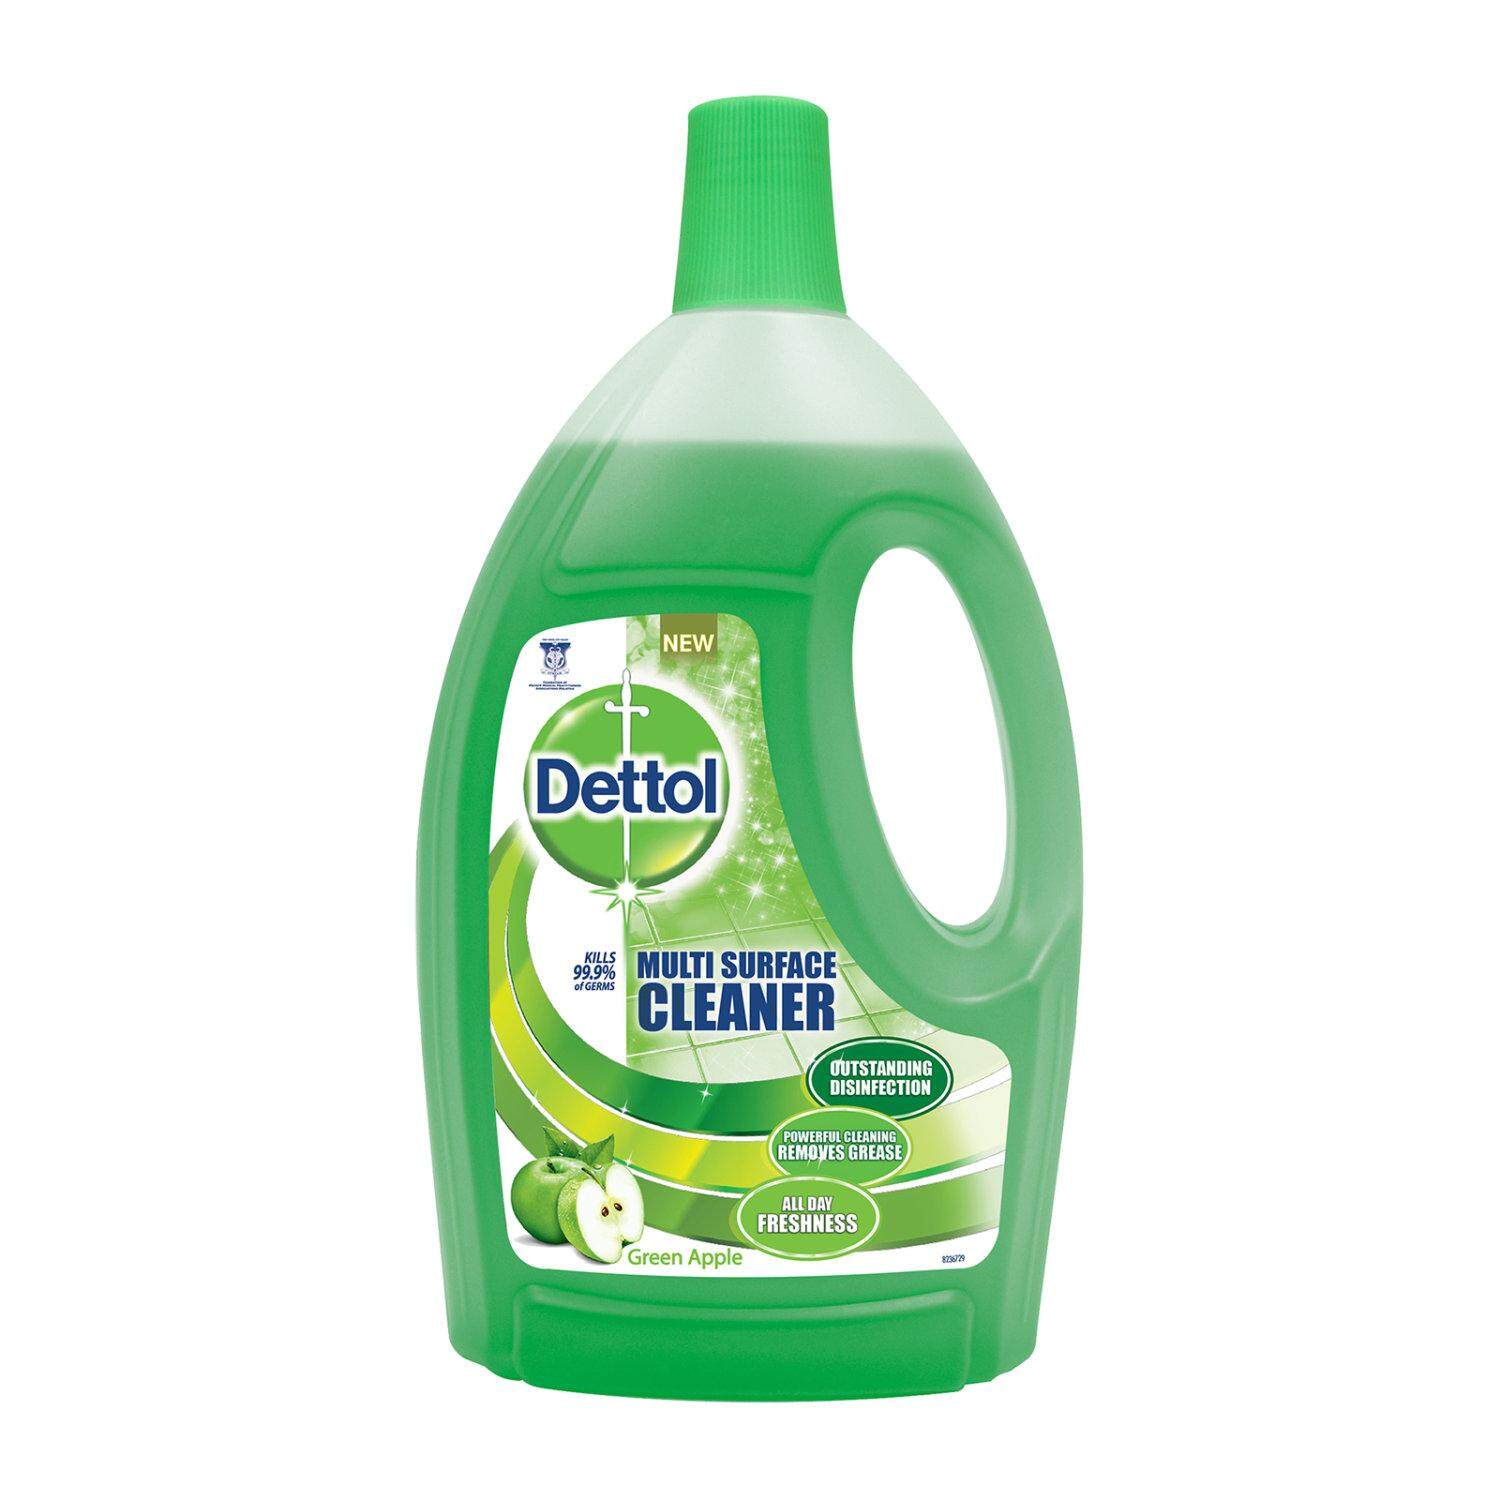 [ส่งฟรี]Dettol Multi Surface Cleaner Green Apple 2L เดทตอล น้ำยาทำความสะอาดพื้นผิว กลิ่นแอปเปิ้ล สีเขียว 2ลิตร Free Shipping